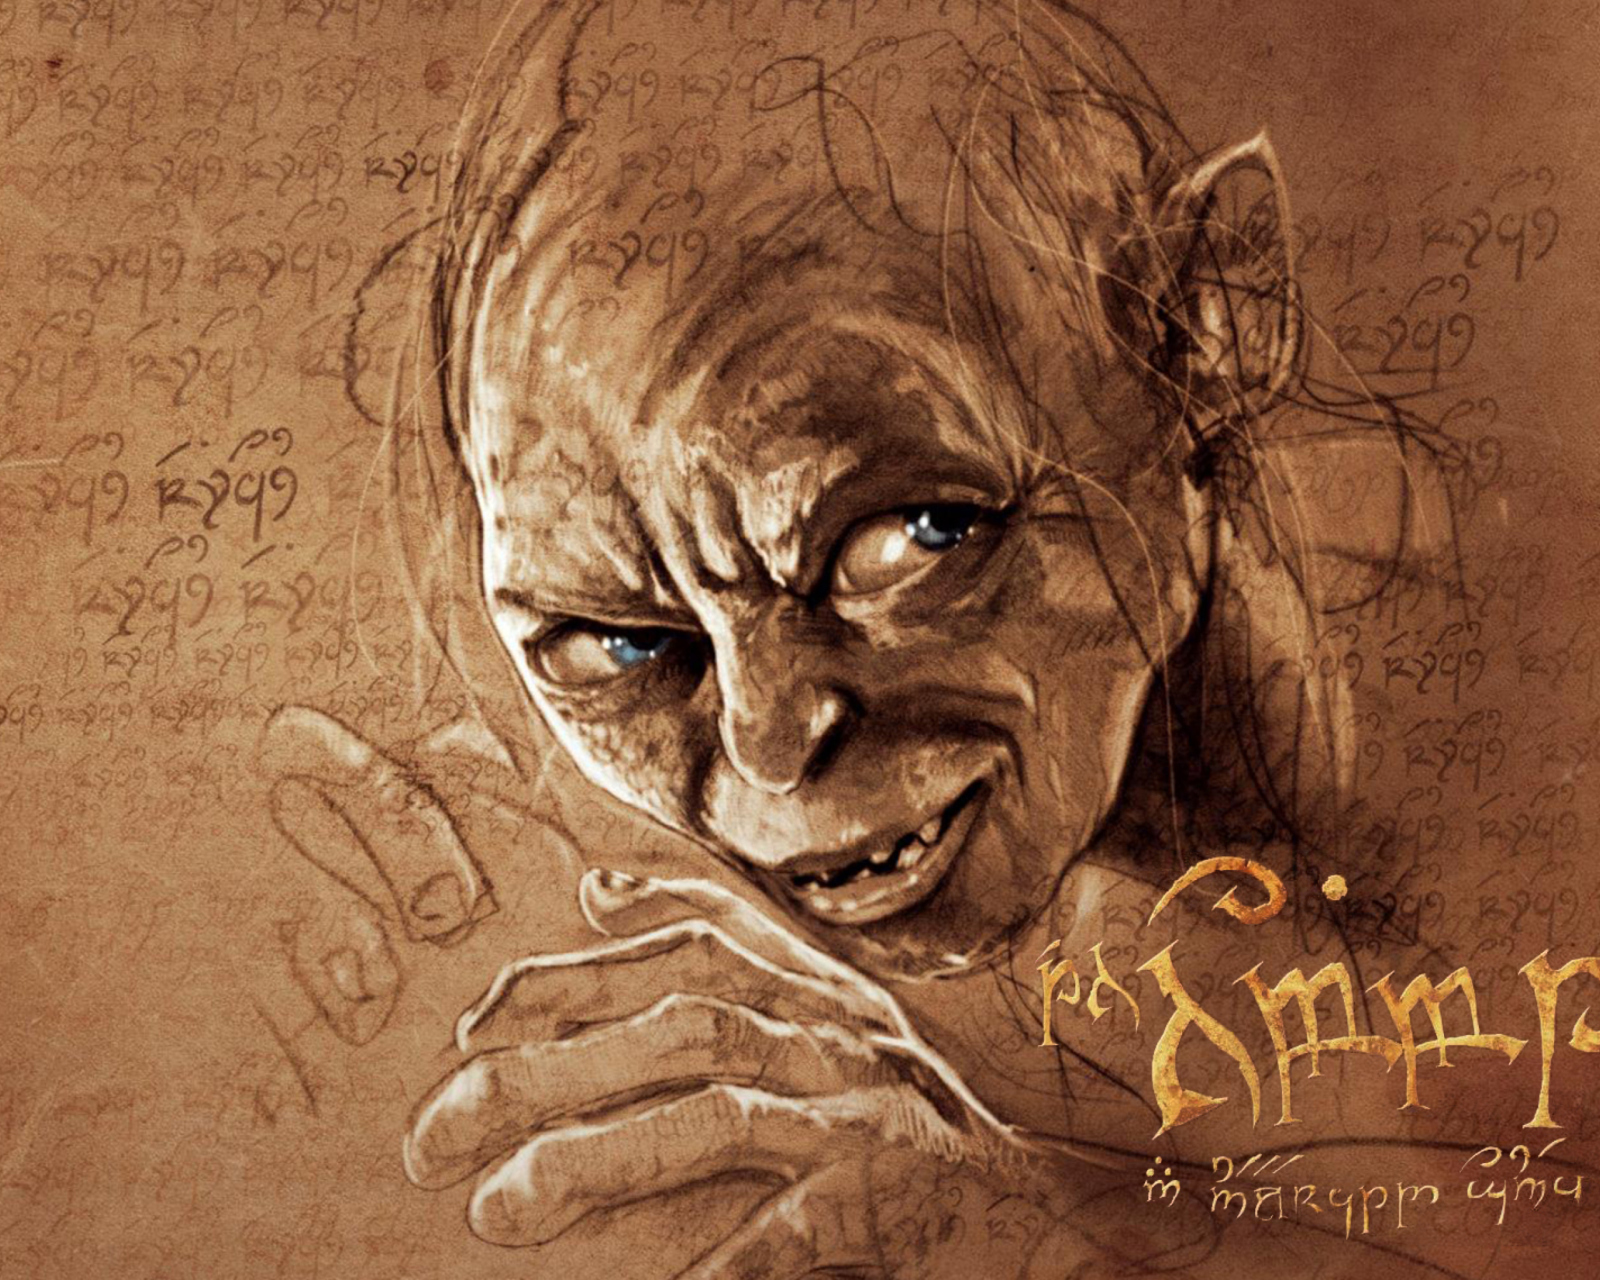 The Hobbit Gollum Artwork wallpaper 1600x1280